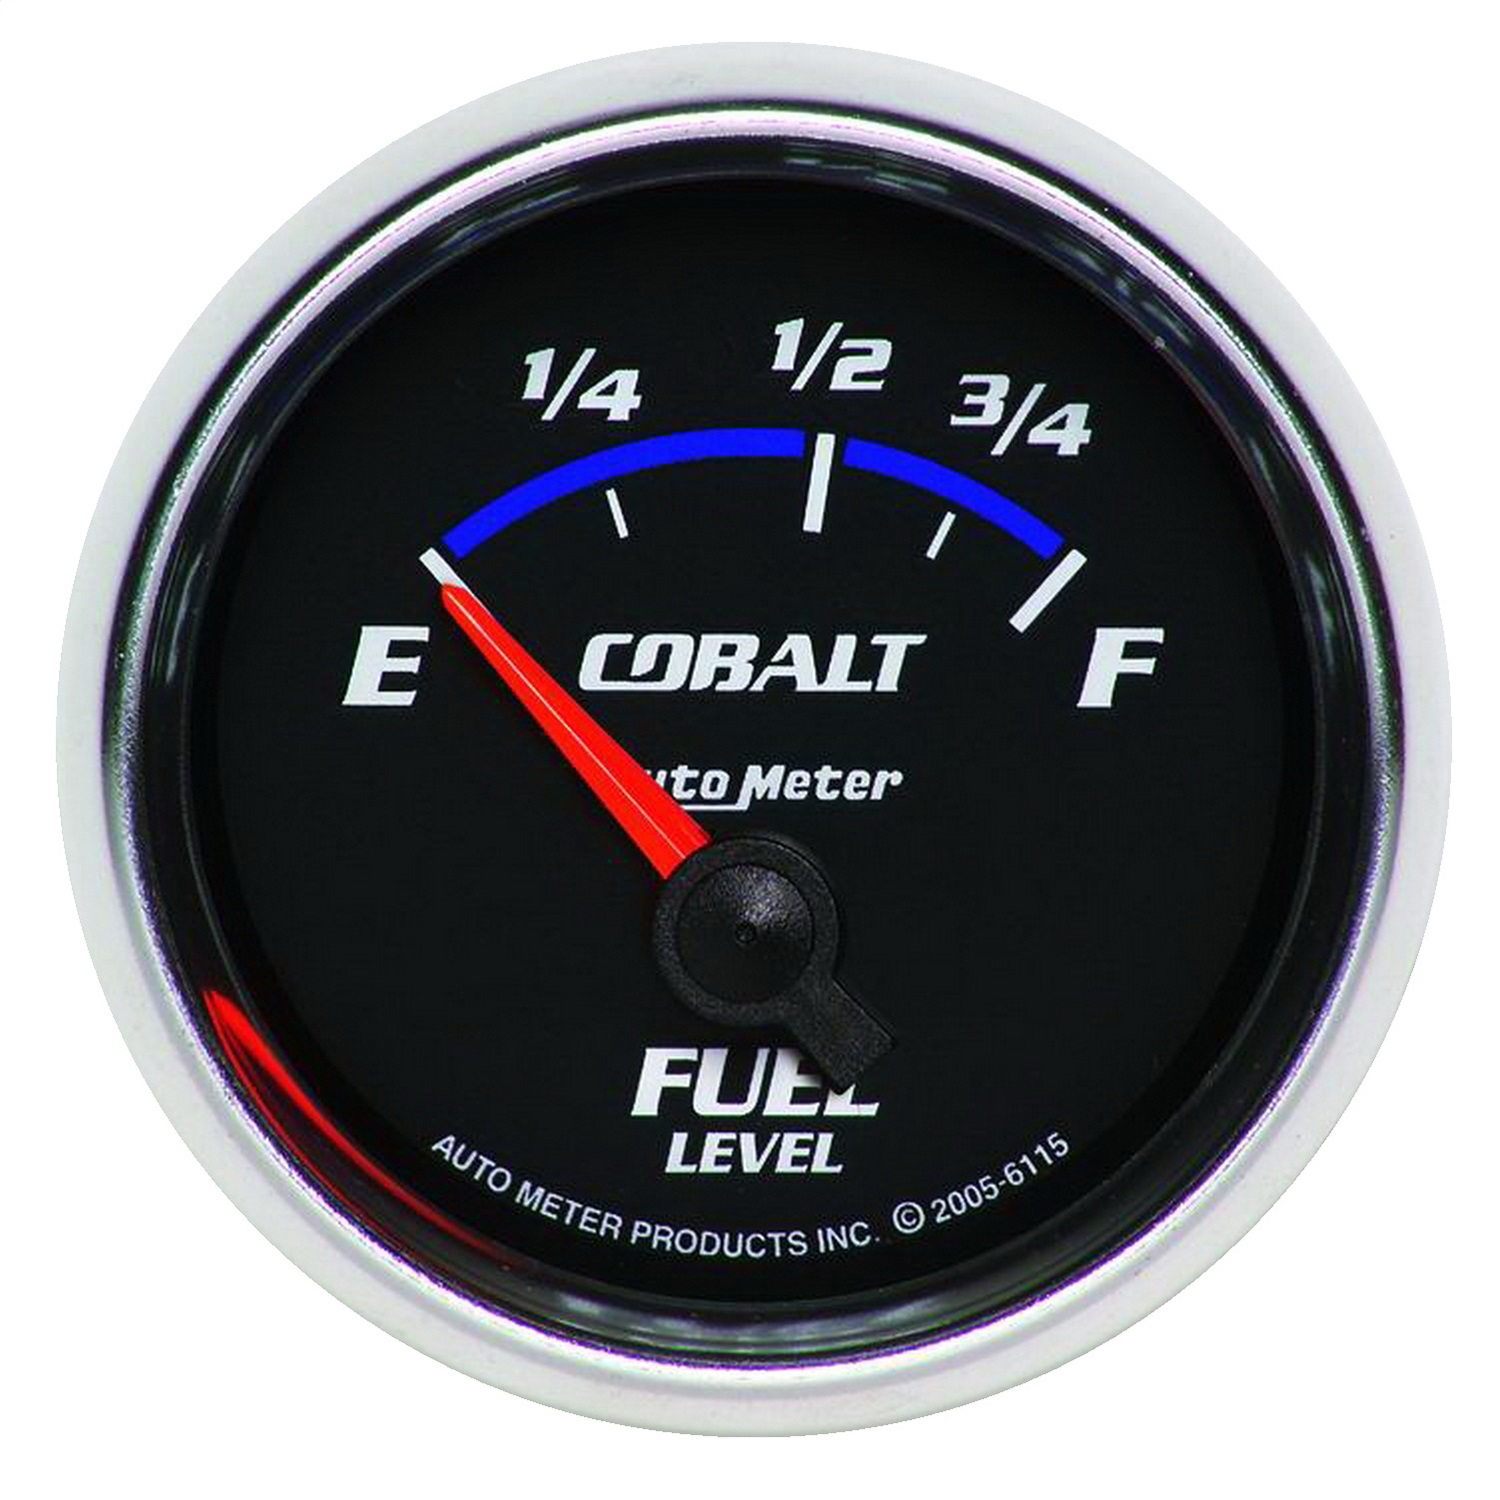 Auto Meter Auto Meter 6115 Cobalt; Electric Fuel Level Gauge